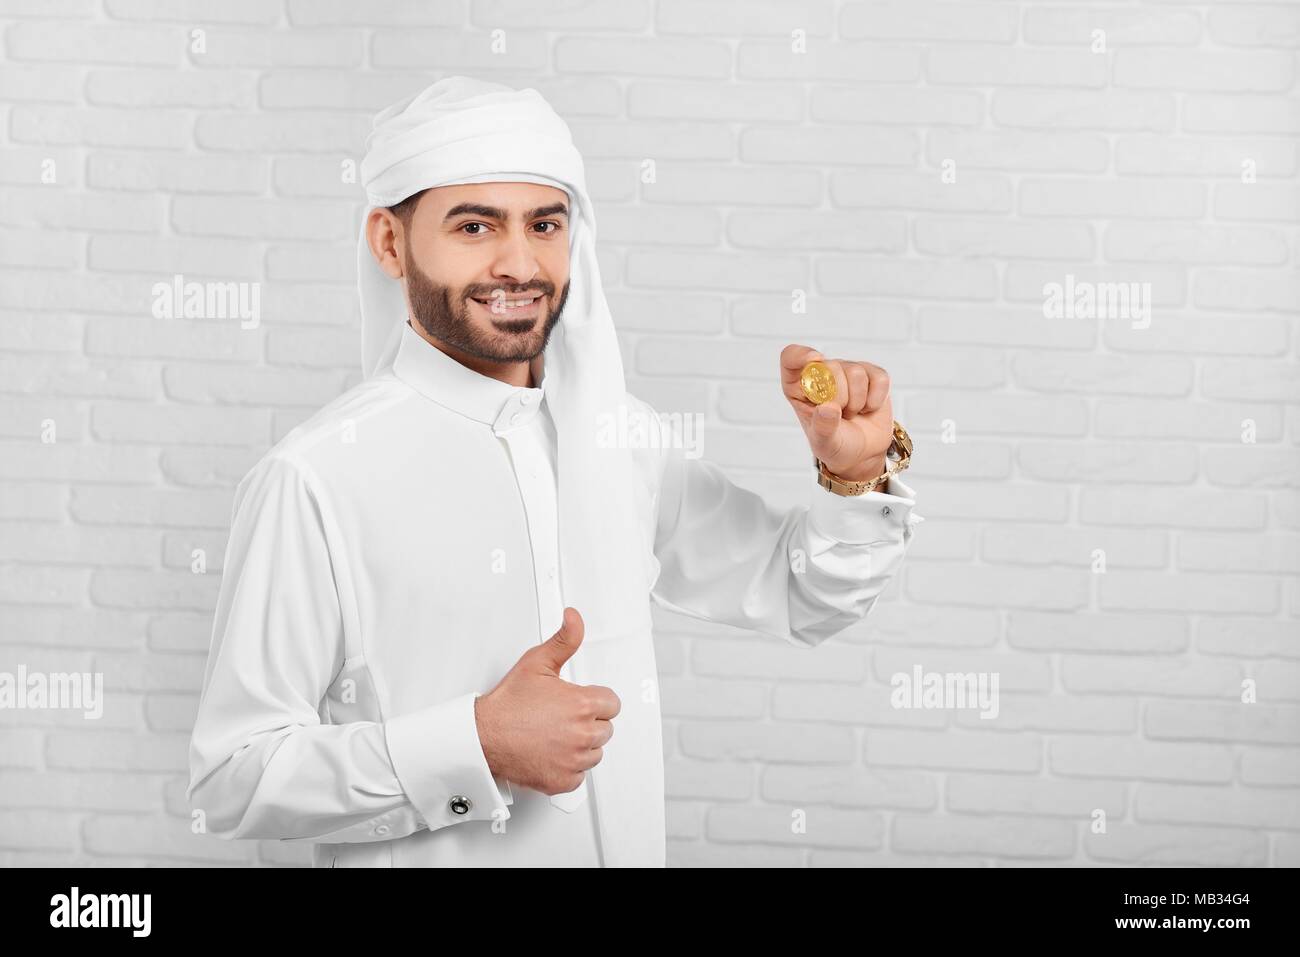 L'homme conserve arabe souriante et bitcoin semble très heureux. Il porte le costume traditionnel arabe blanc,golden watch et les boutons de manchette. Un homme d'affaires semble très positive et heureuse. Banque D'Images